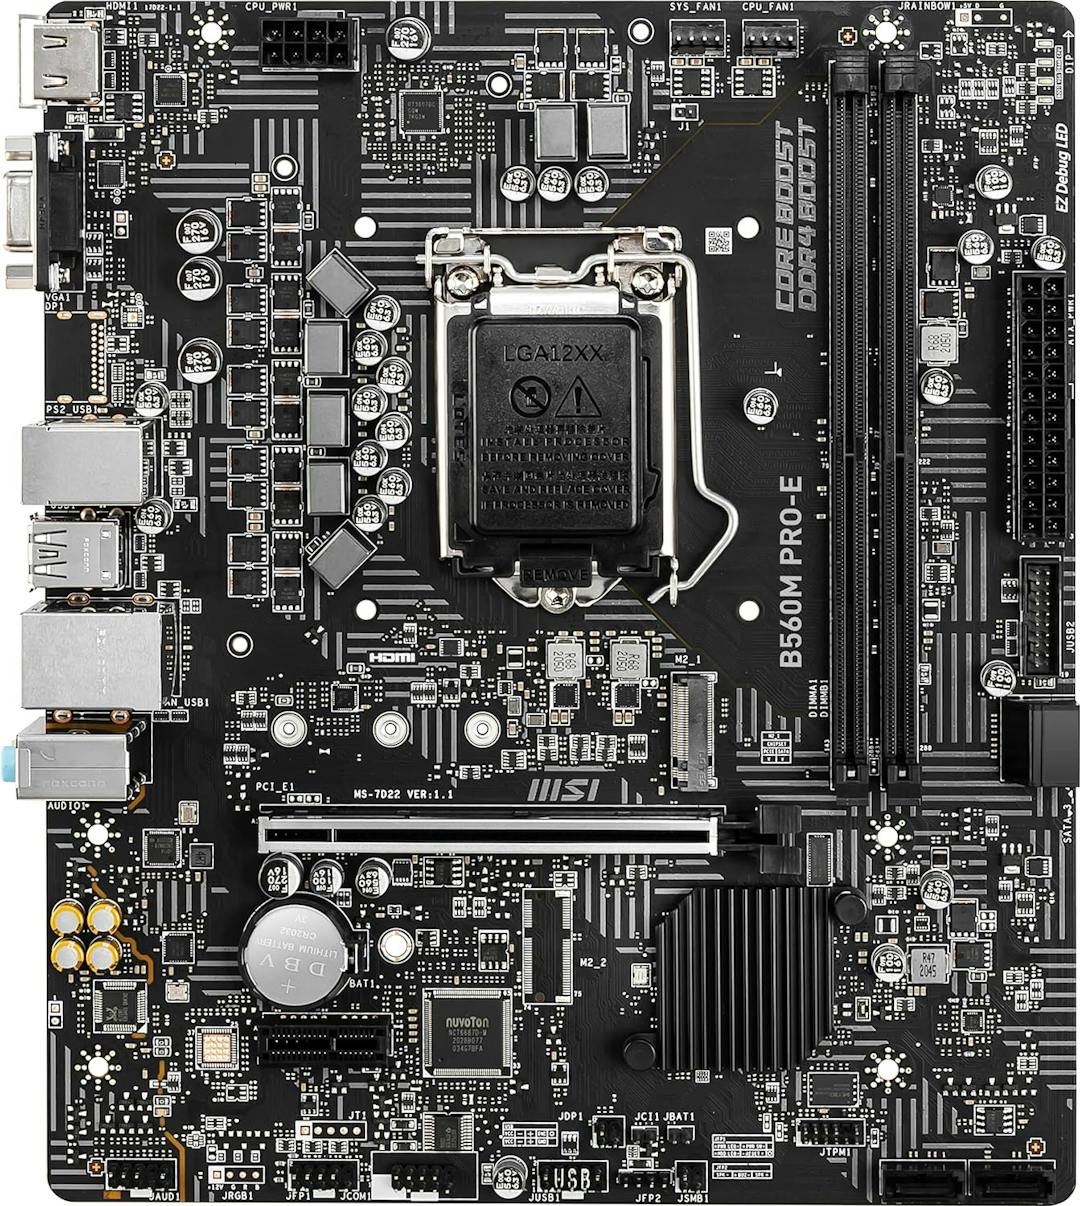 MSI B560M PRO-E LGA 1200 Micro ATX Intel Motherboard